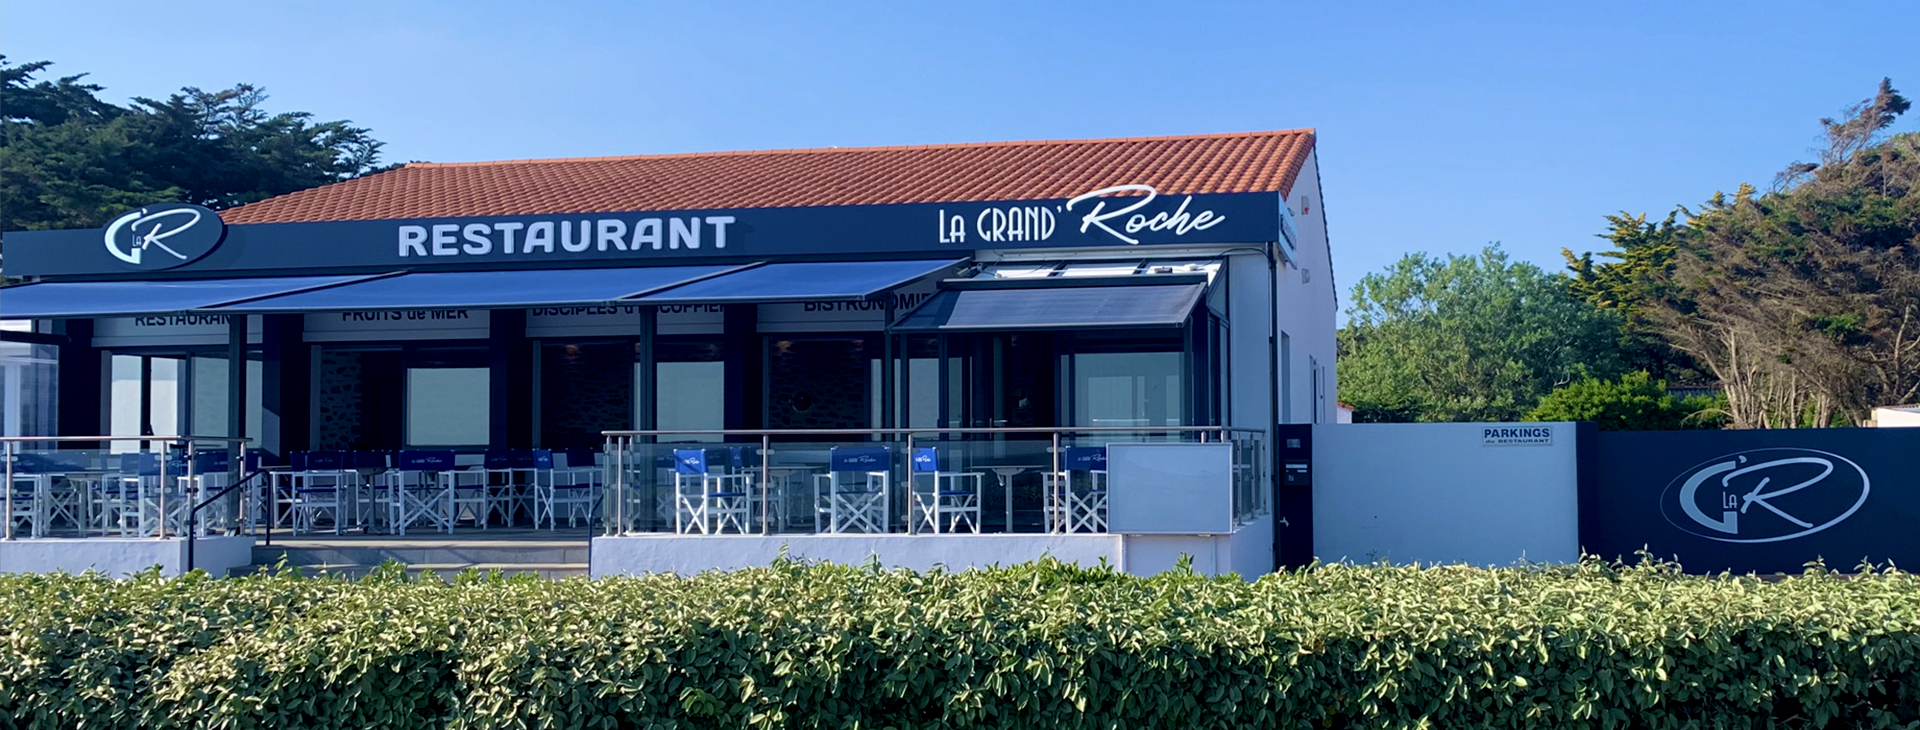 Restaurant La Grand&132.jpg039;Roche Slide1 132